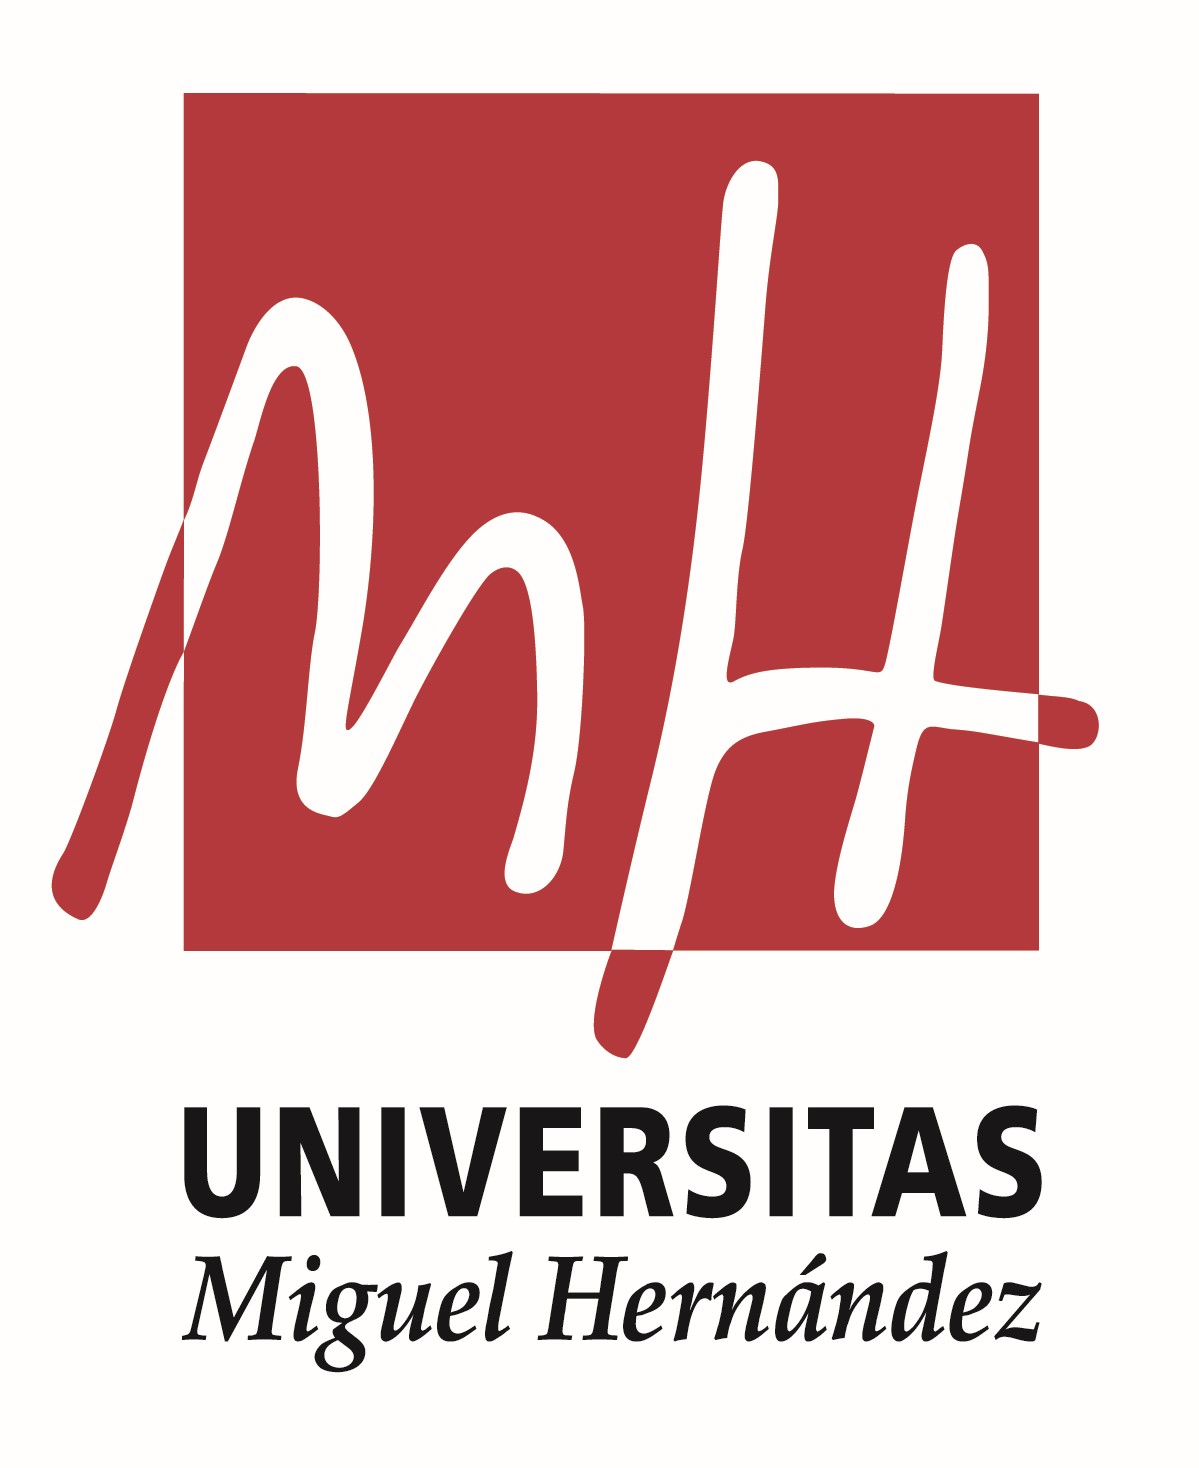 Universidad-miguel-h